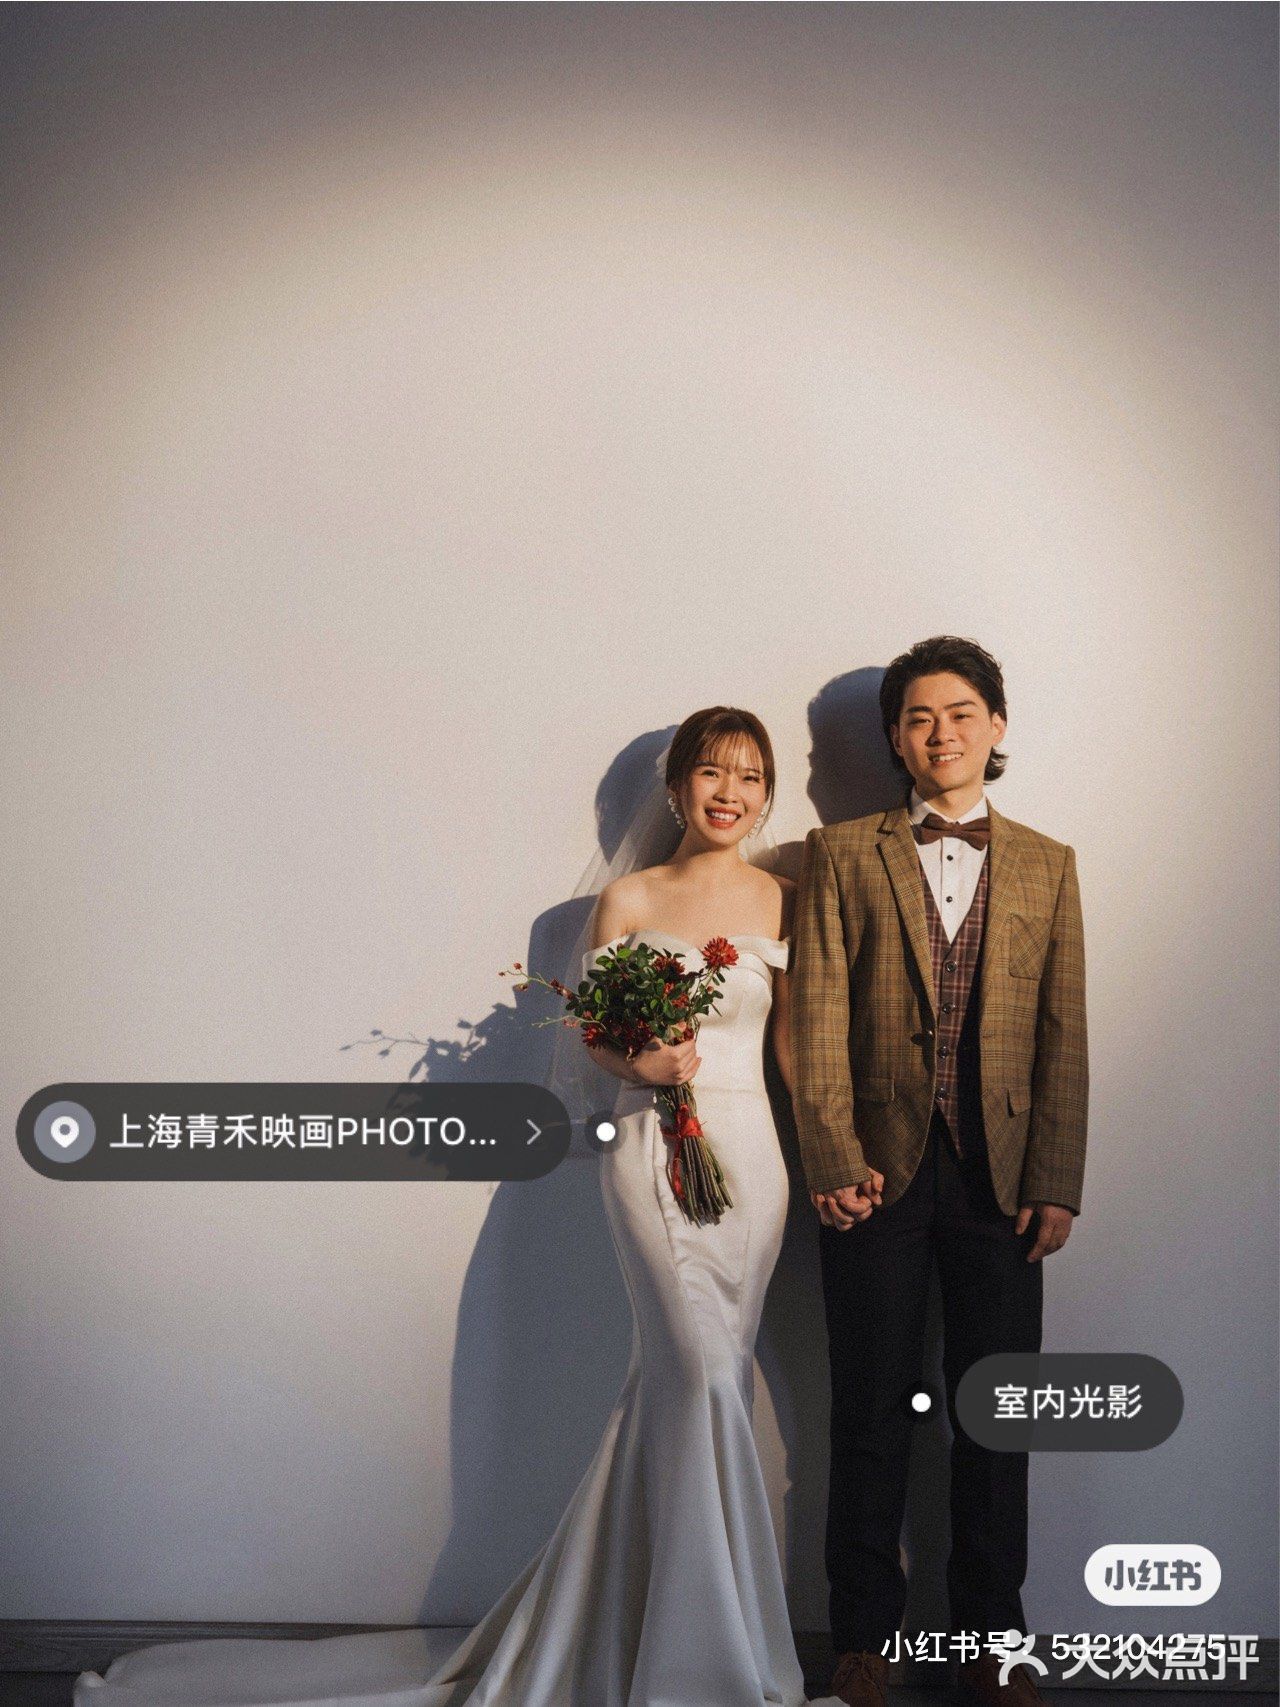 上海拍婚纱2万_上海拍一套婚纱照多少钱_拍情侣照和婚纱照的区别